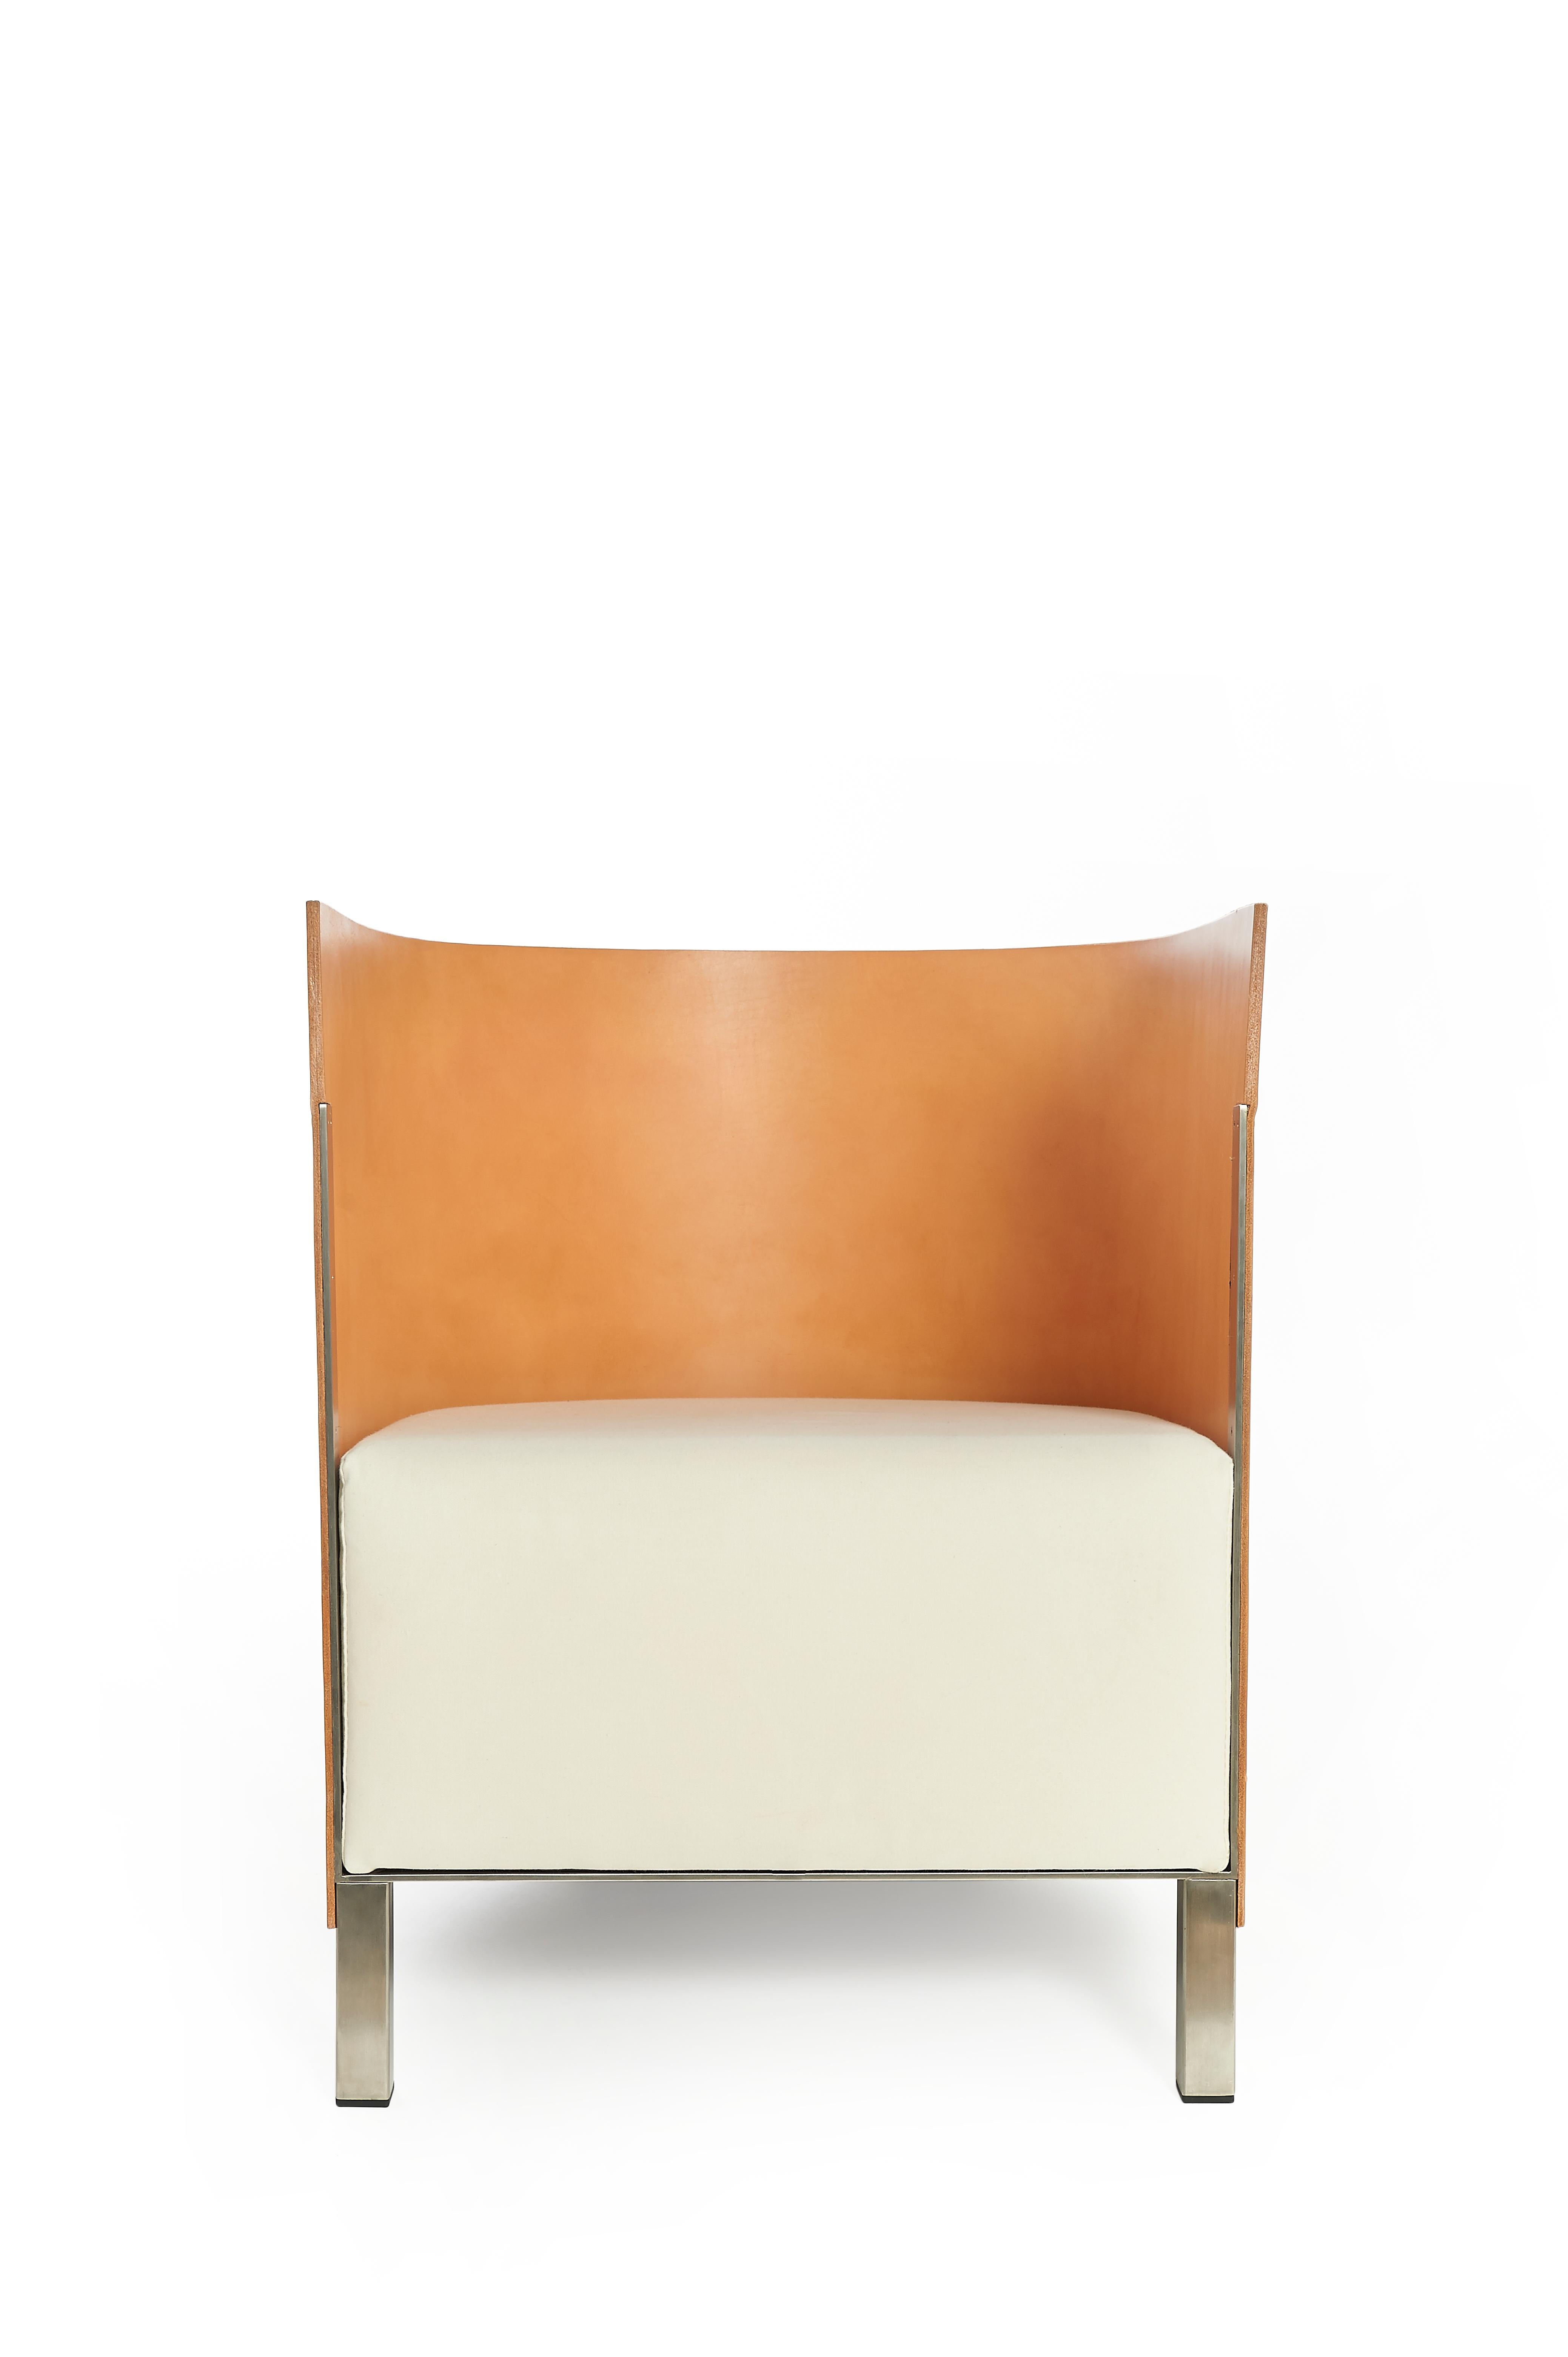 Le fauteuil Lensvelt MVS S88 en cuir couleur cognac a été conçu par Maarten van Severen. Il s'agit d'un fauteuil bas. Matériaux : Le dossier est en cuir de selle de couleur cognac, l'assise en toile blanc cassé et le cadre est en acier